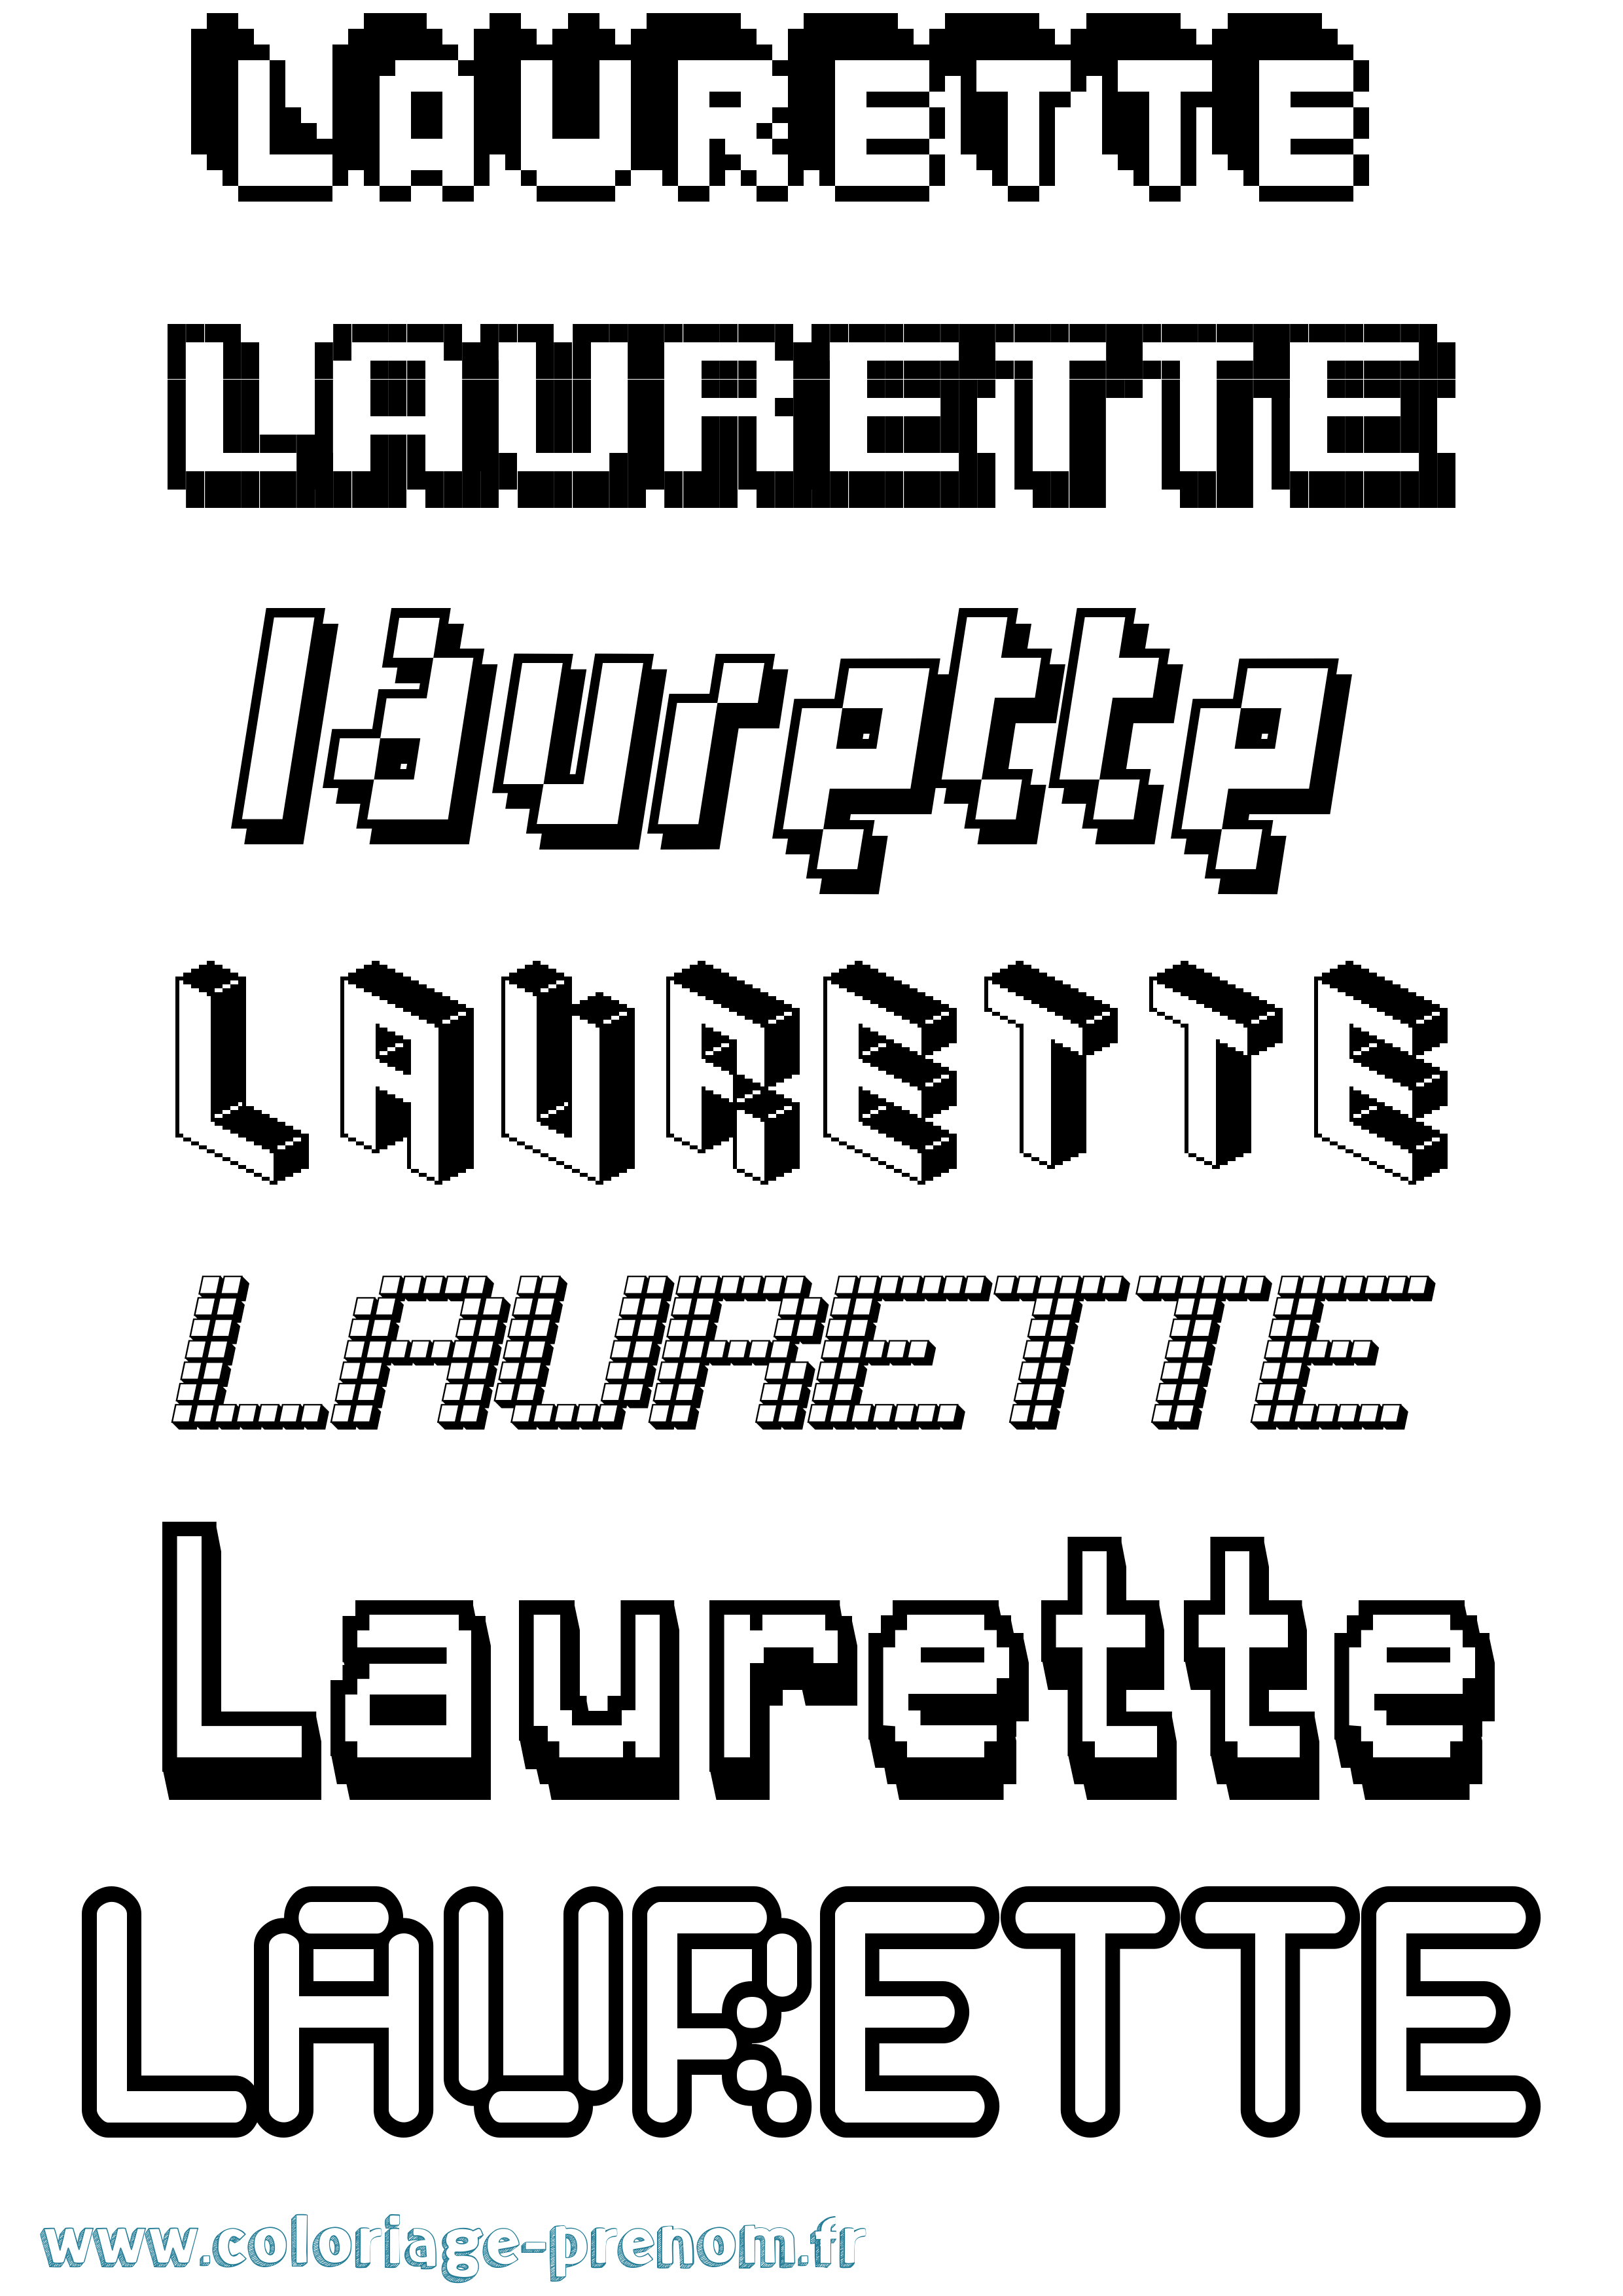 Coloriage prénom Laurette Pixel